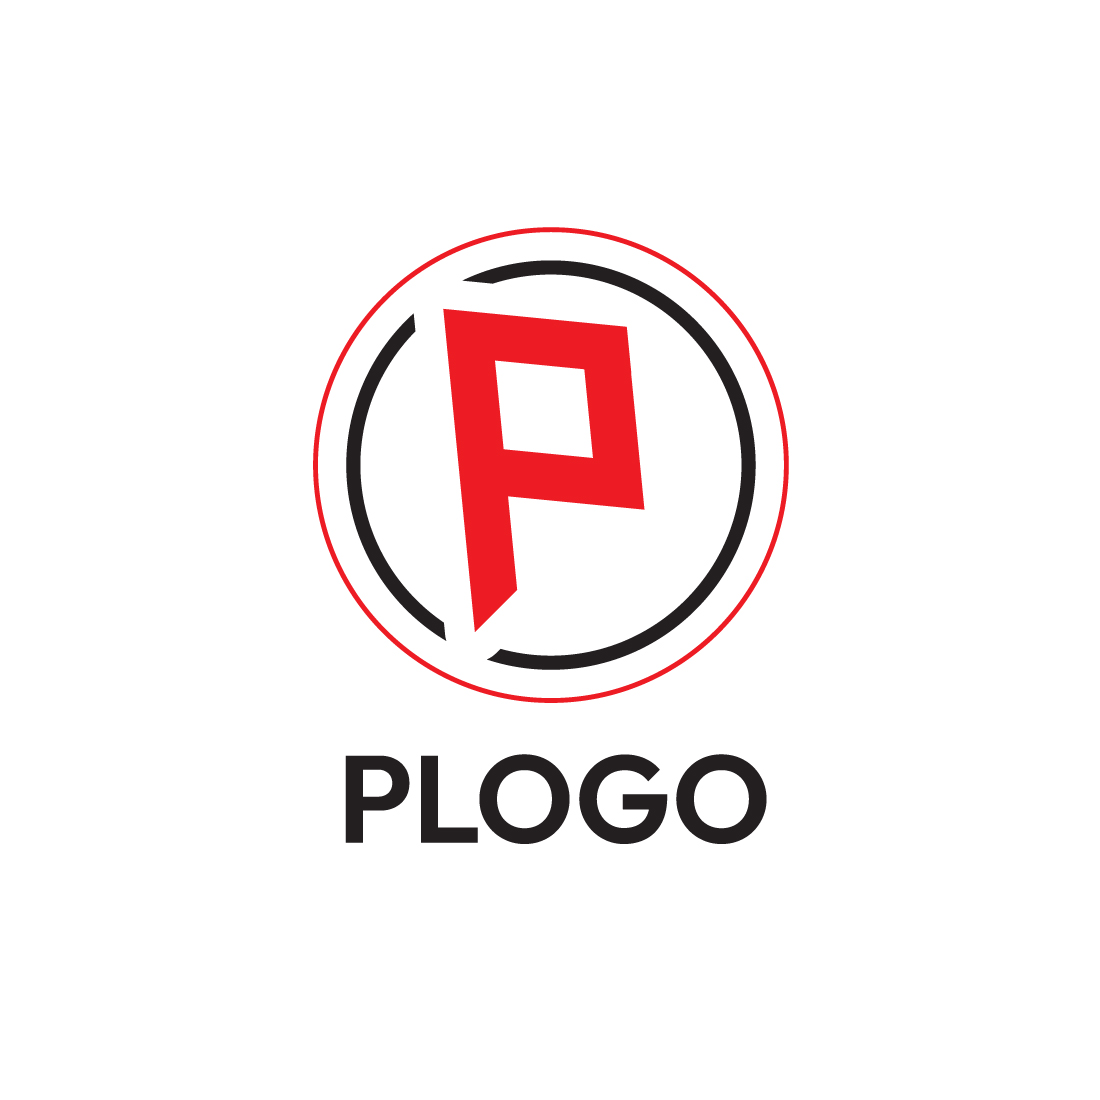 Premium P Logo Design Bundle: Elevate Your Brand Identity! cover image.